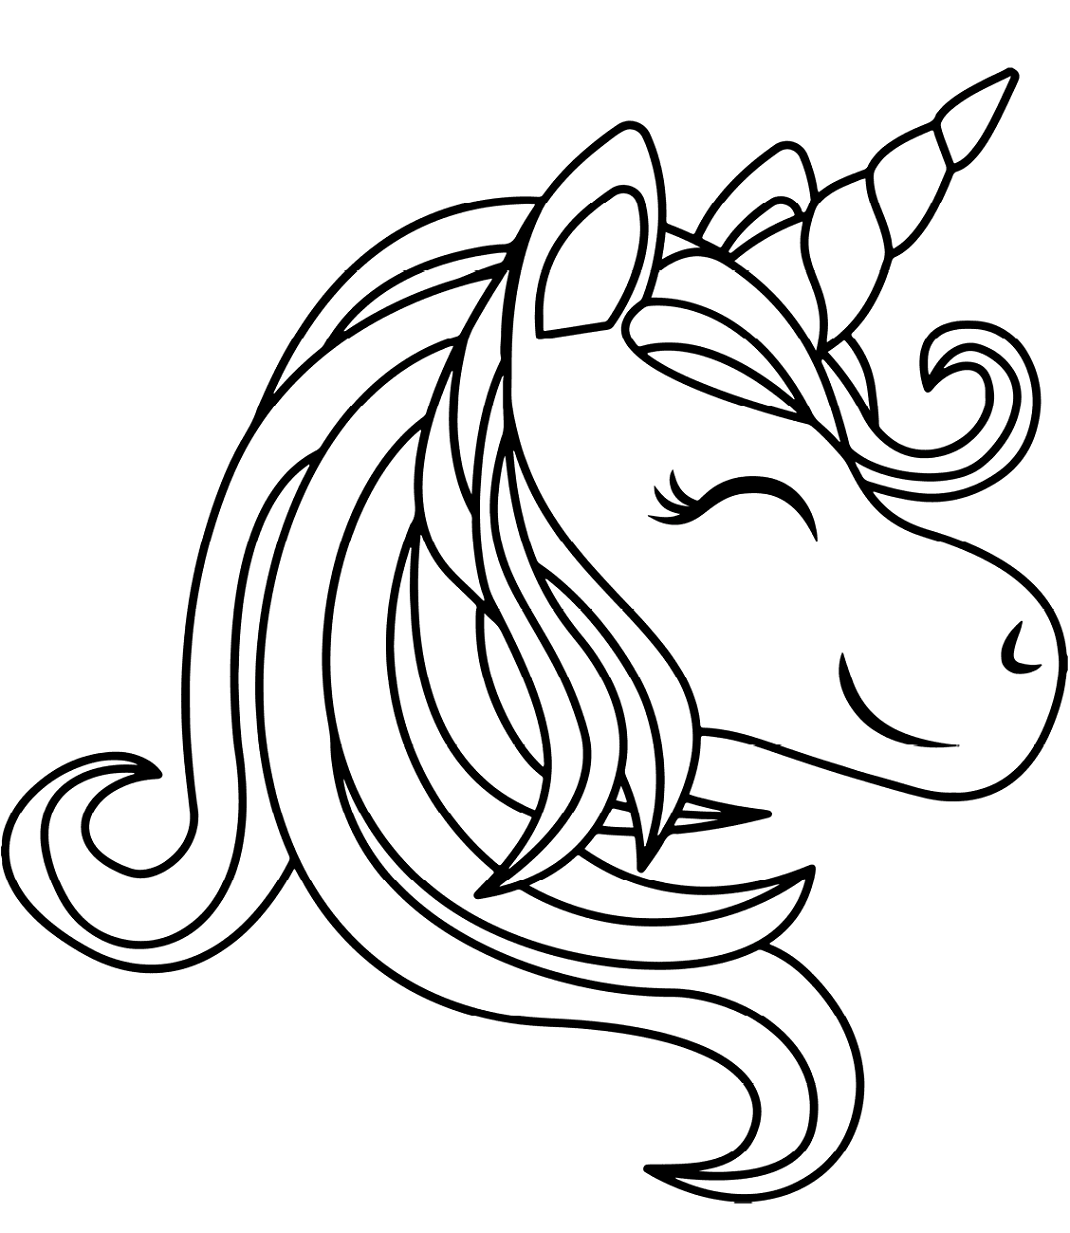 unicorn-ve-g-kku-a-boyama-sayfas-boyama-online